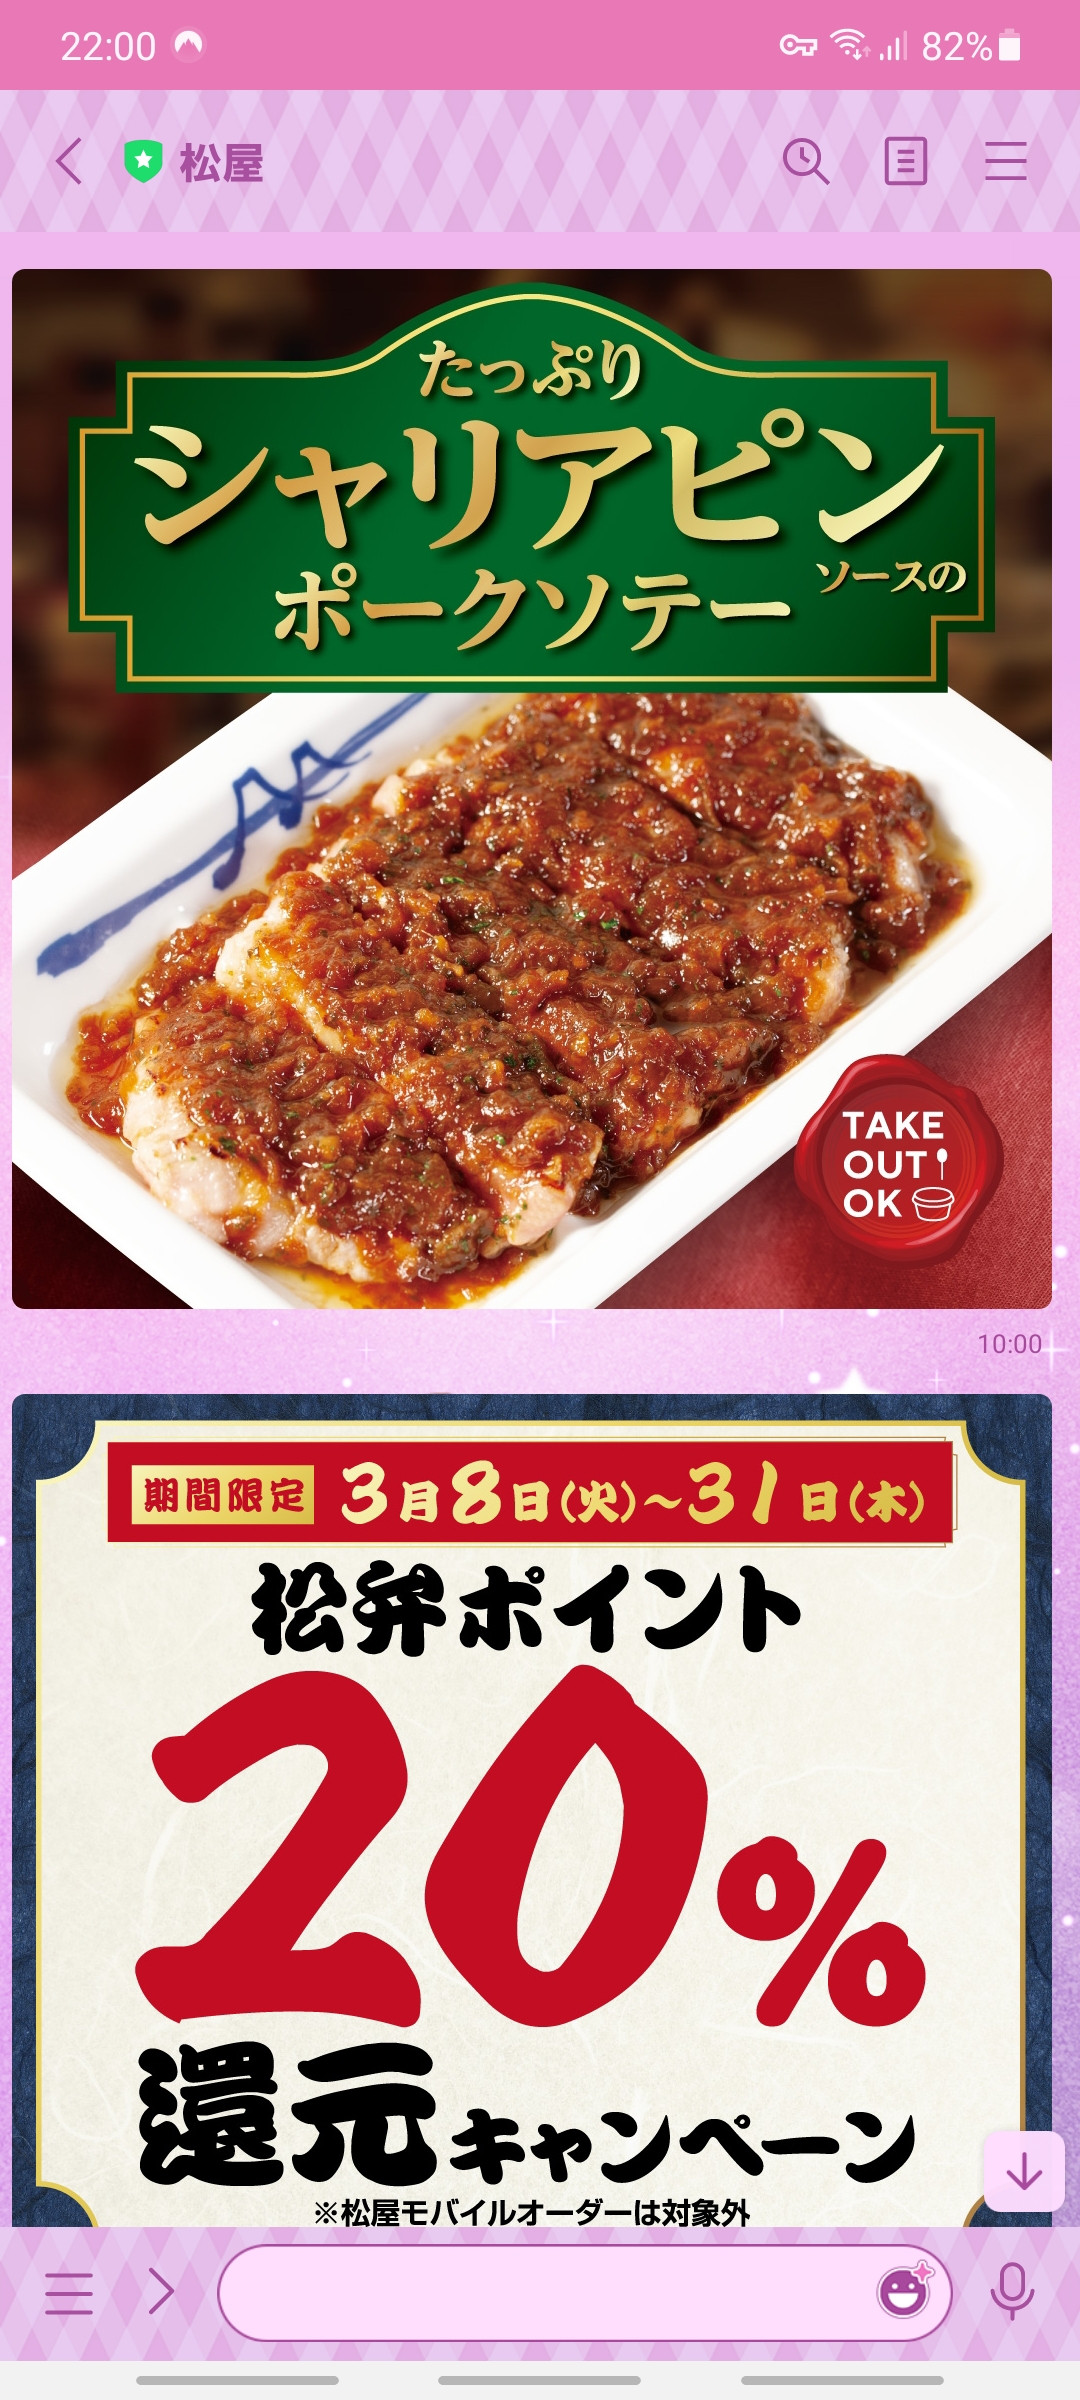 【朗報】松屋の新商品「たっぷりシャリアピンソースのポークソテー」ガチで美味しそう